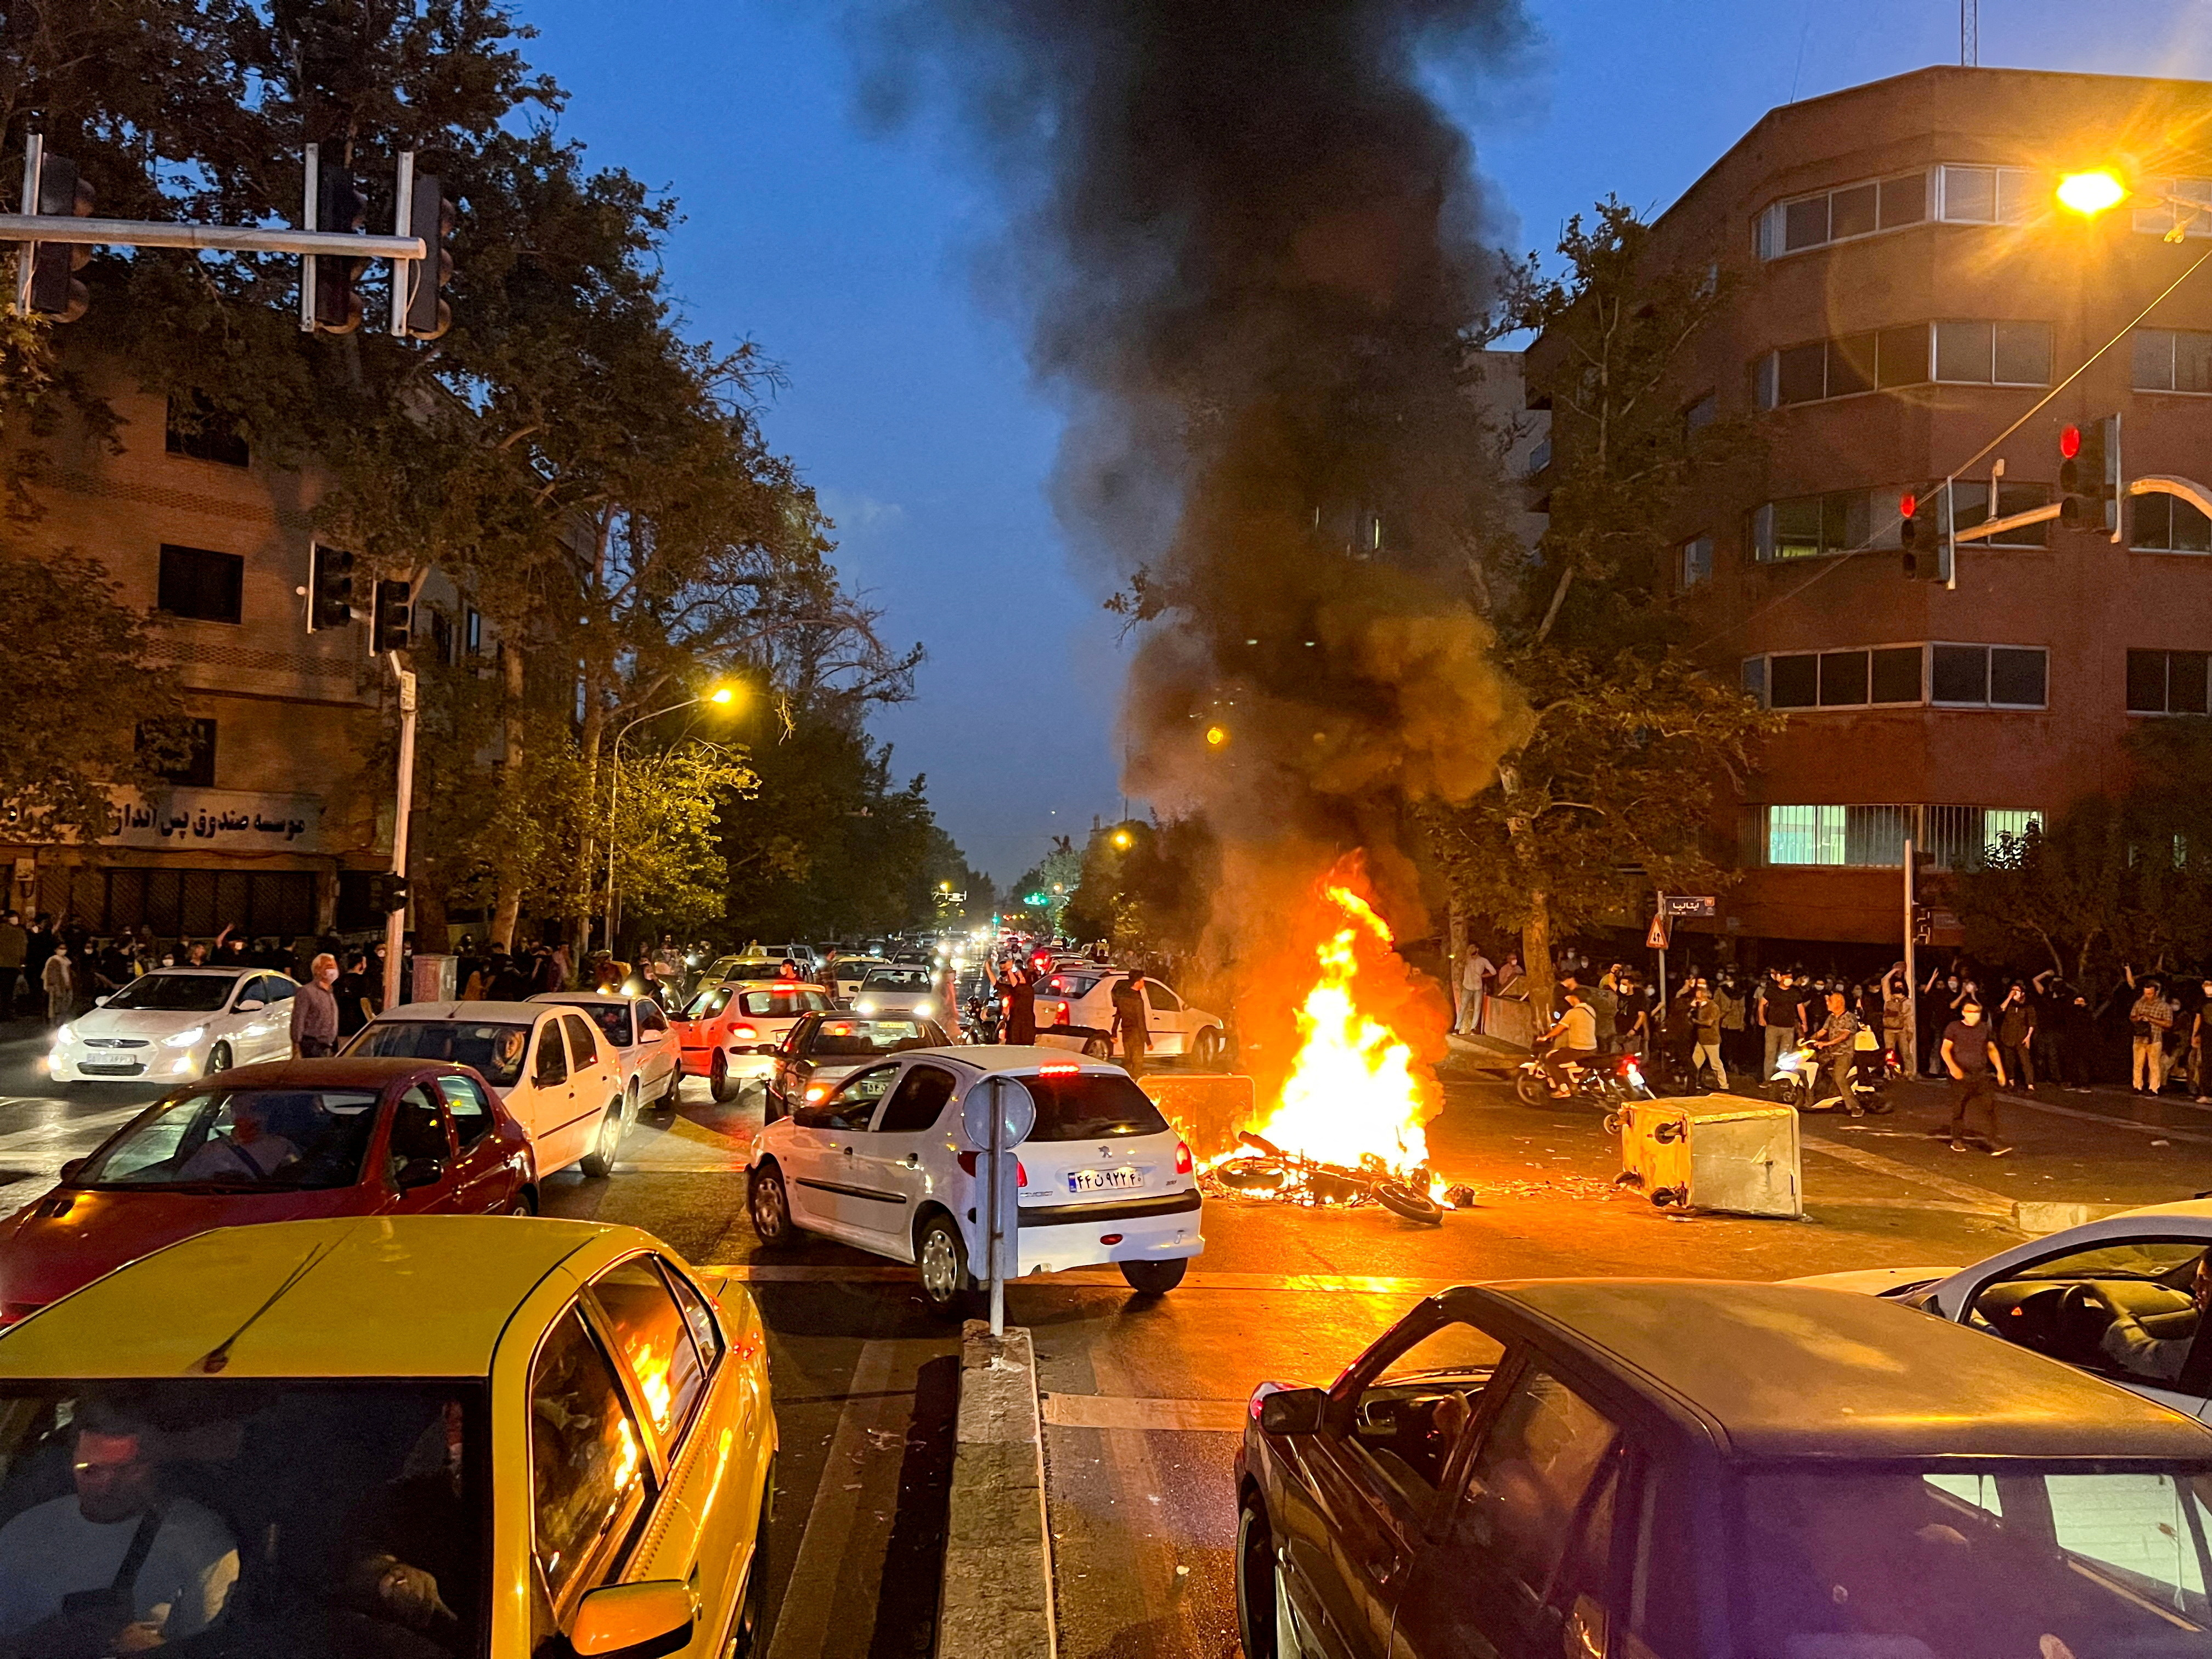 Una motocicleta de la policía arde durante una protesta por la muerte de Mahsa Amini, en Teherán, Irán, 19 de septiembre de 2022. WANA (Agencia de Noticias de Asia Occidental) vía REUTERS